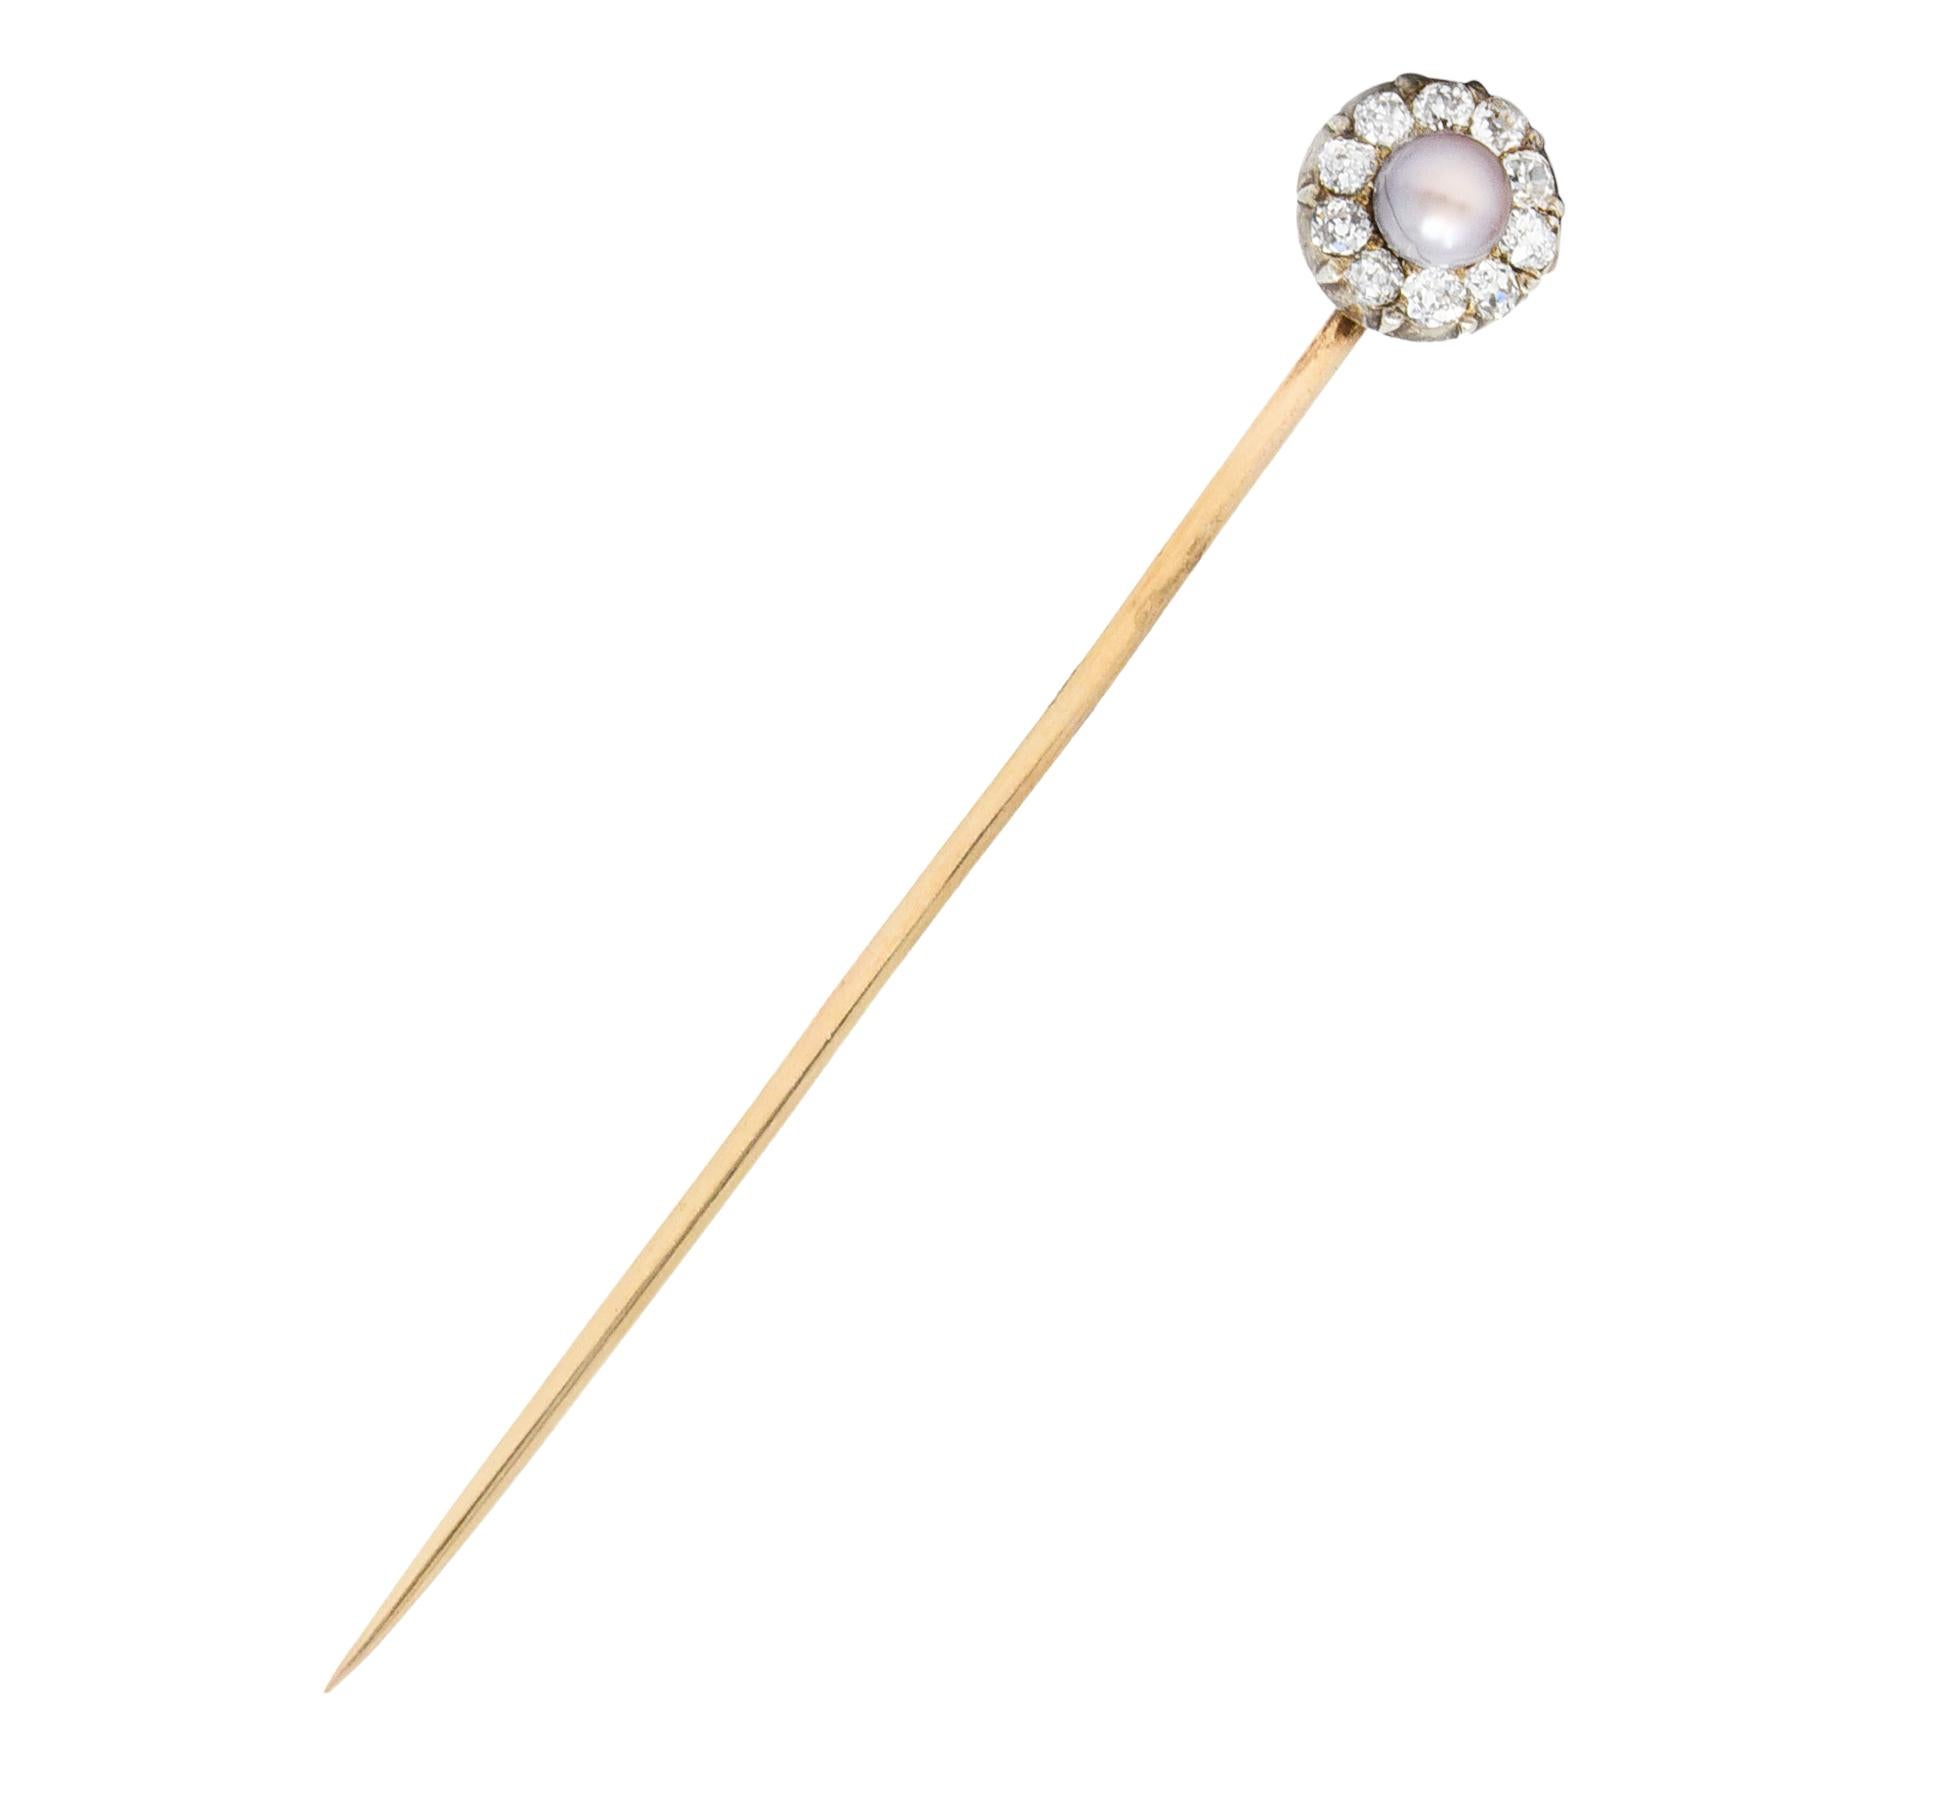 Cluster zentriert eine 3,0 mm runde Perle - lavendelfarben mit starken roséfarbenen Obertönen und sehr gutem Lüster

Umgeben von Diamanten im alten Minenschliff mit einem Gesamtgewicht von etwa 0,30 Karat - augenrein und glänzend

Geprüft als